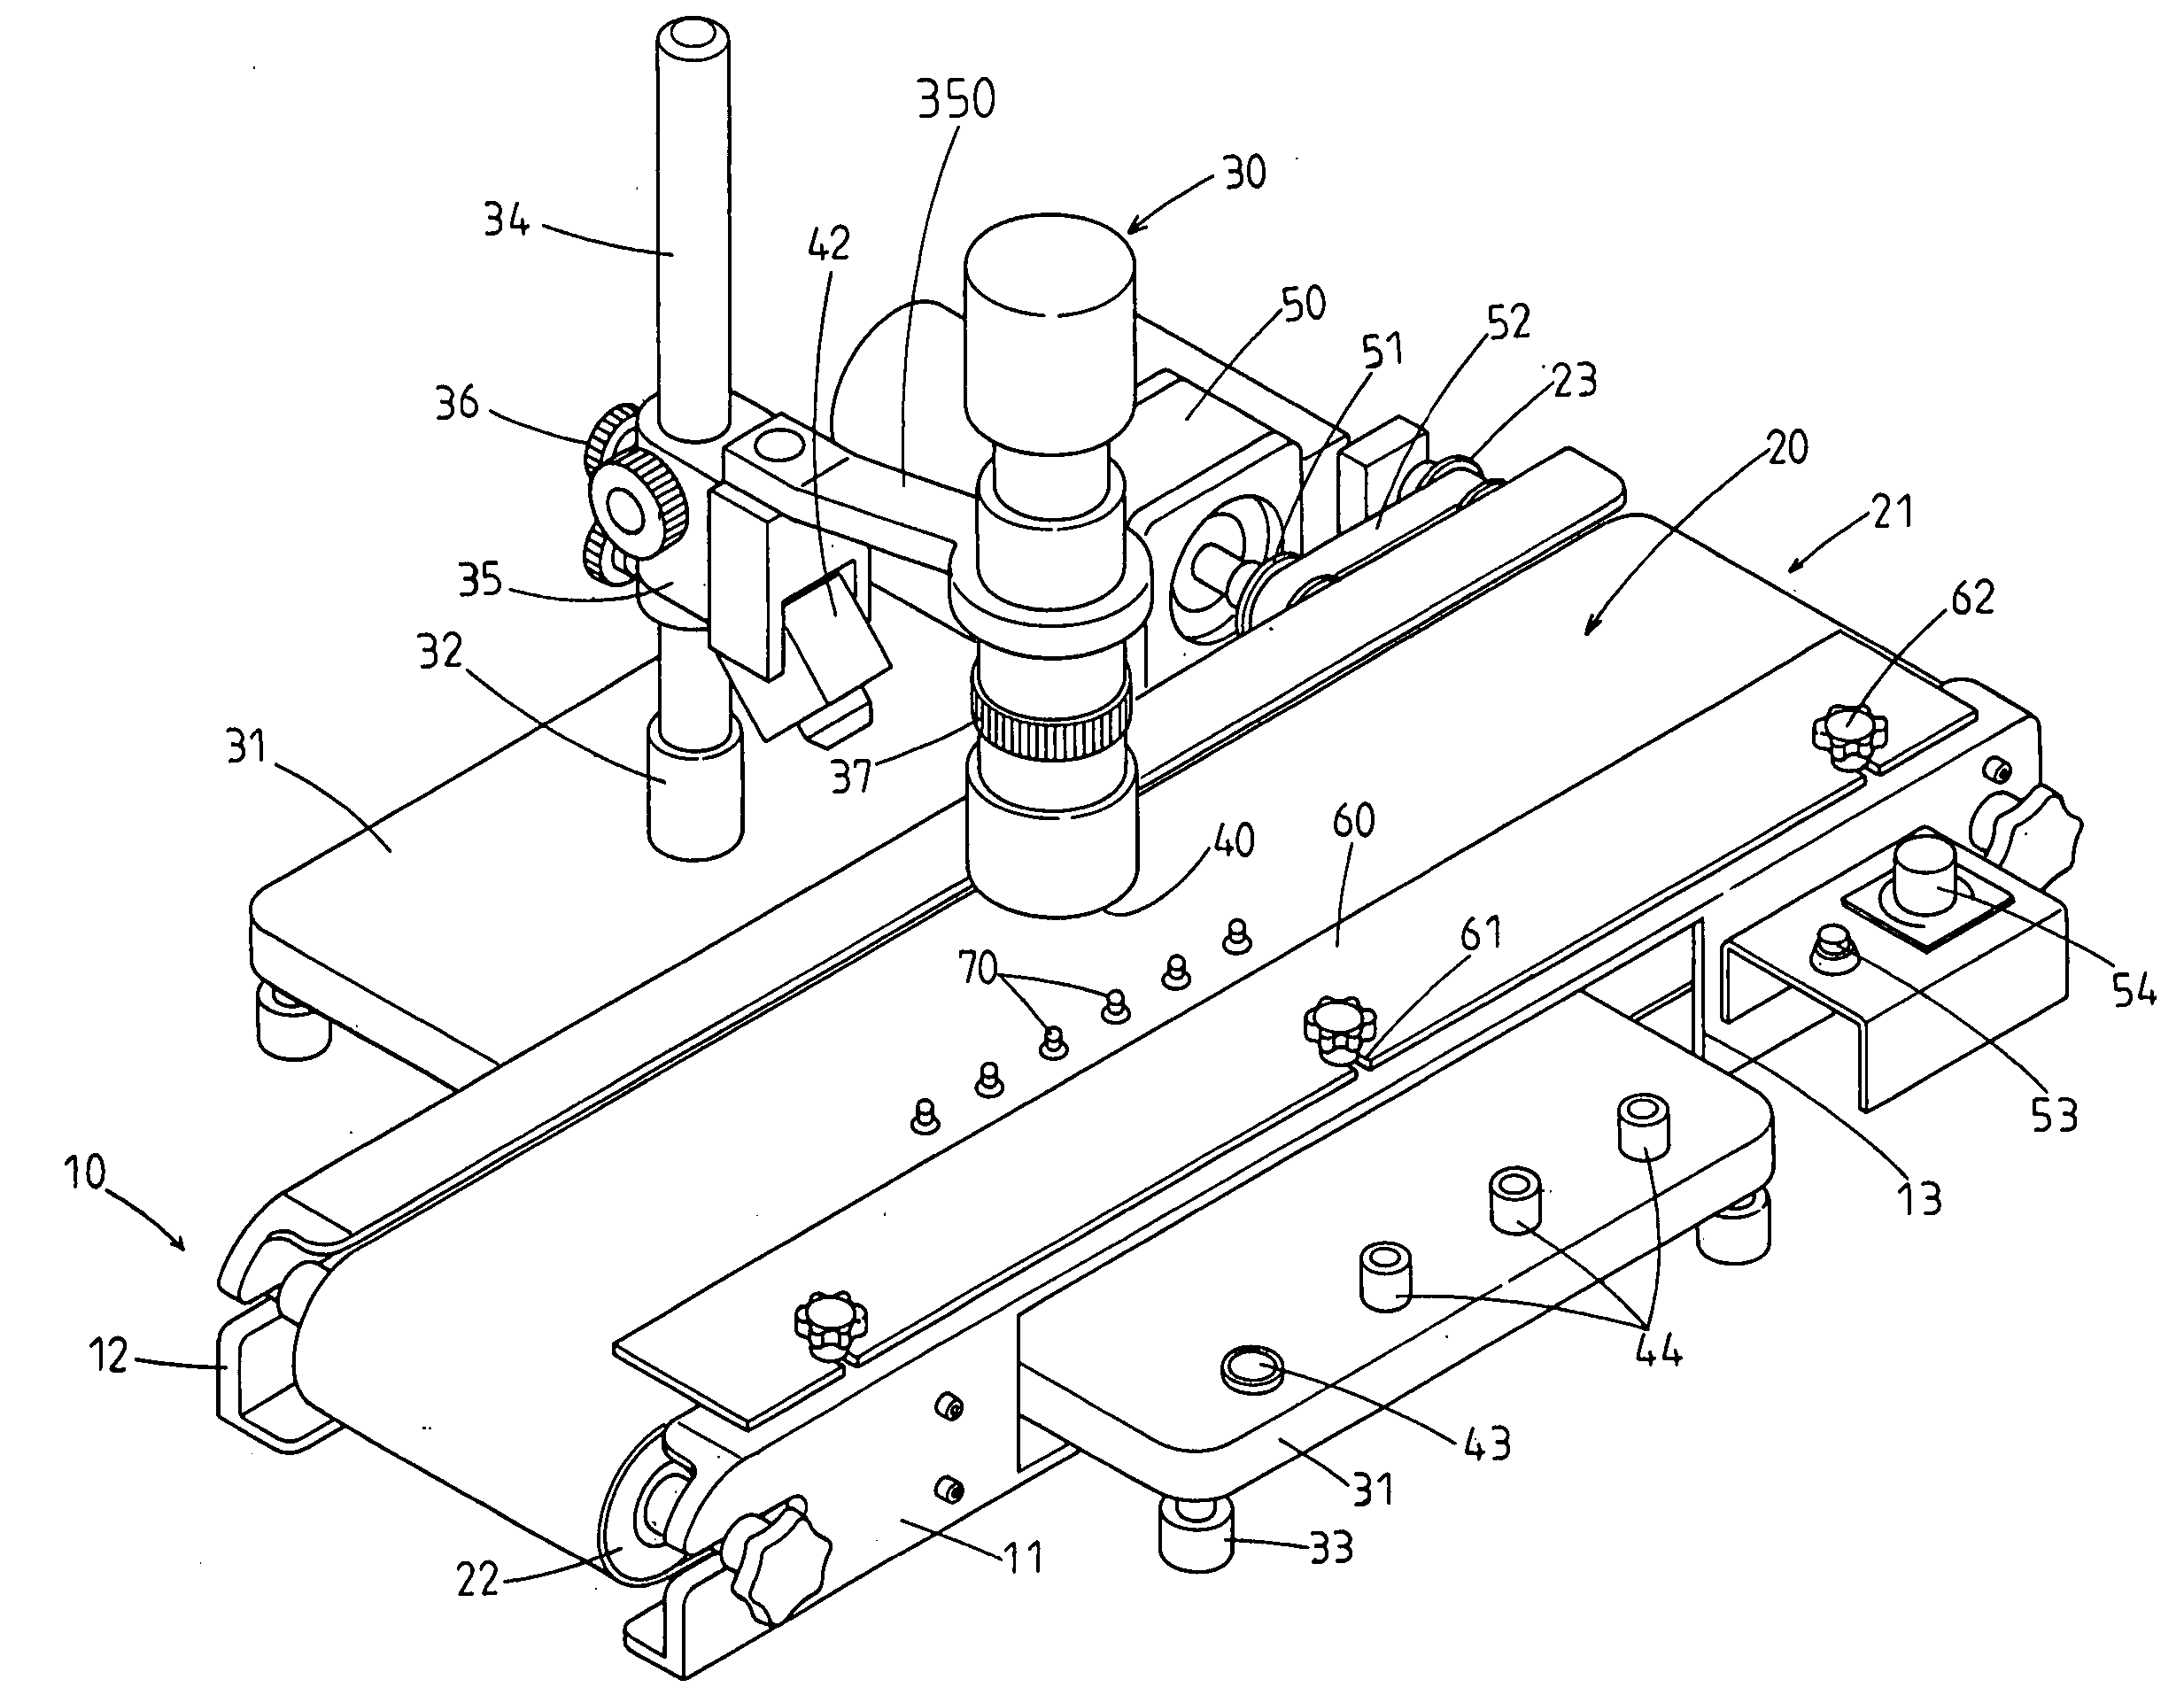 Micro-image examining apparatus